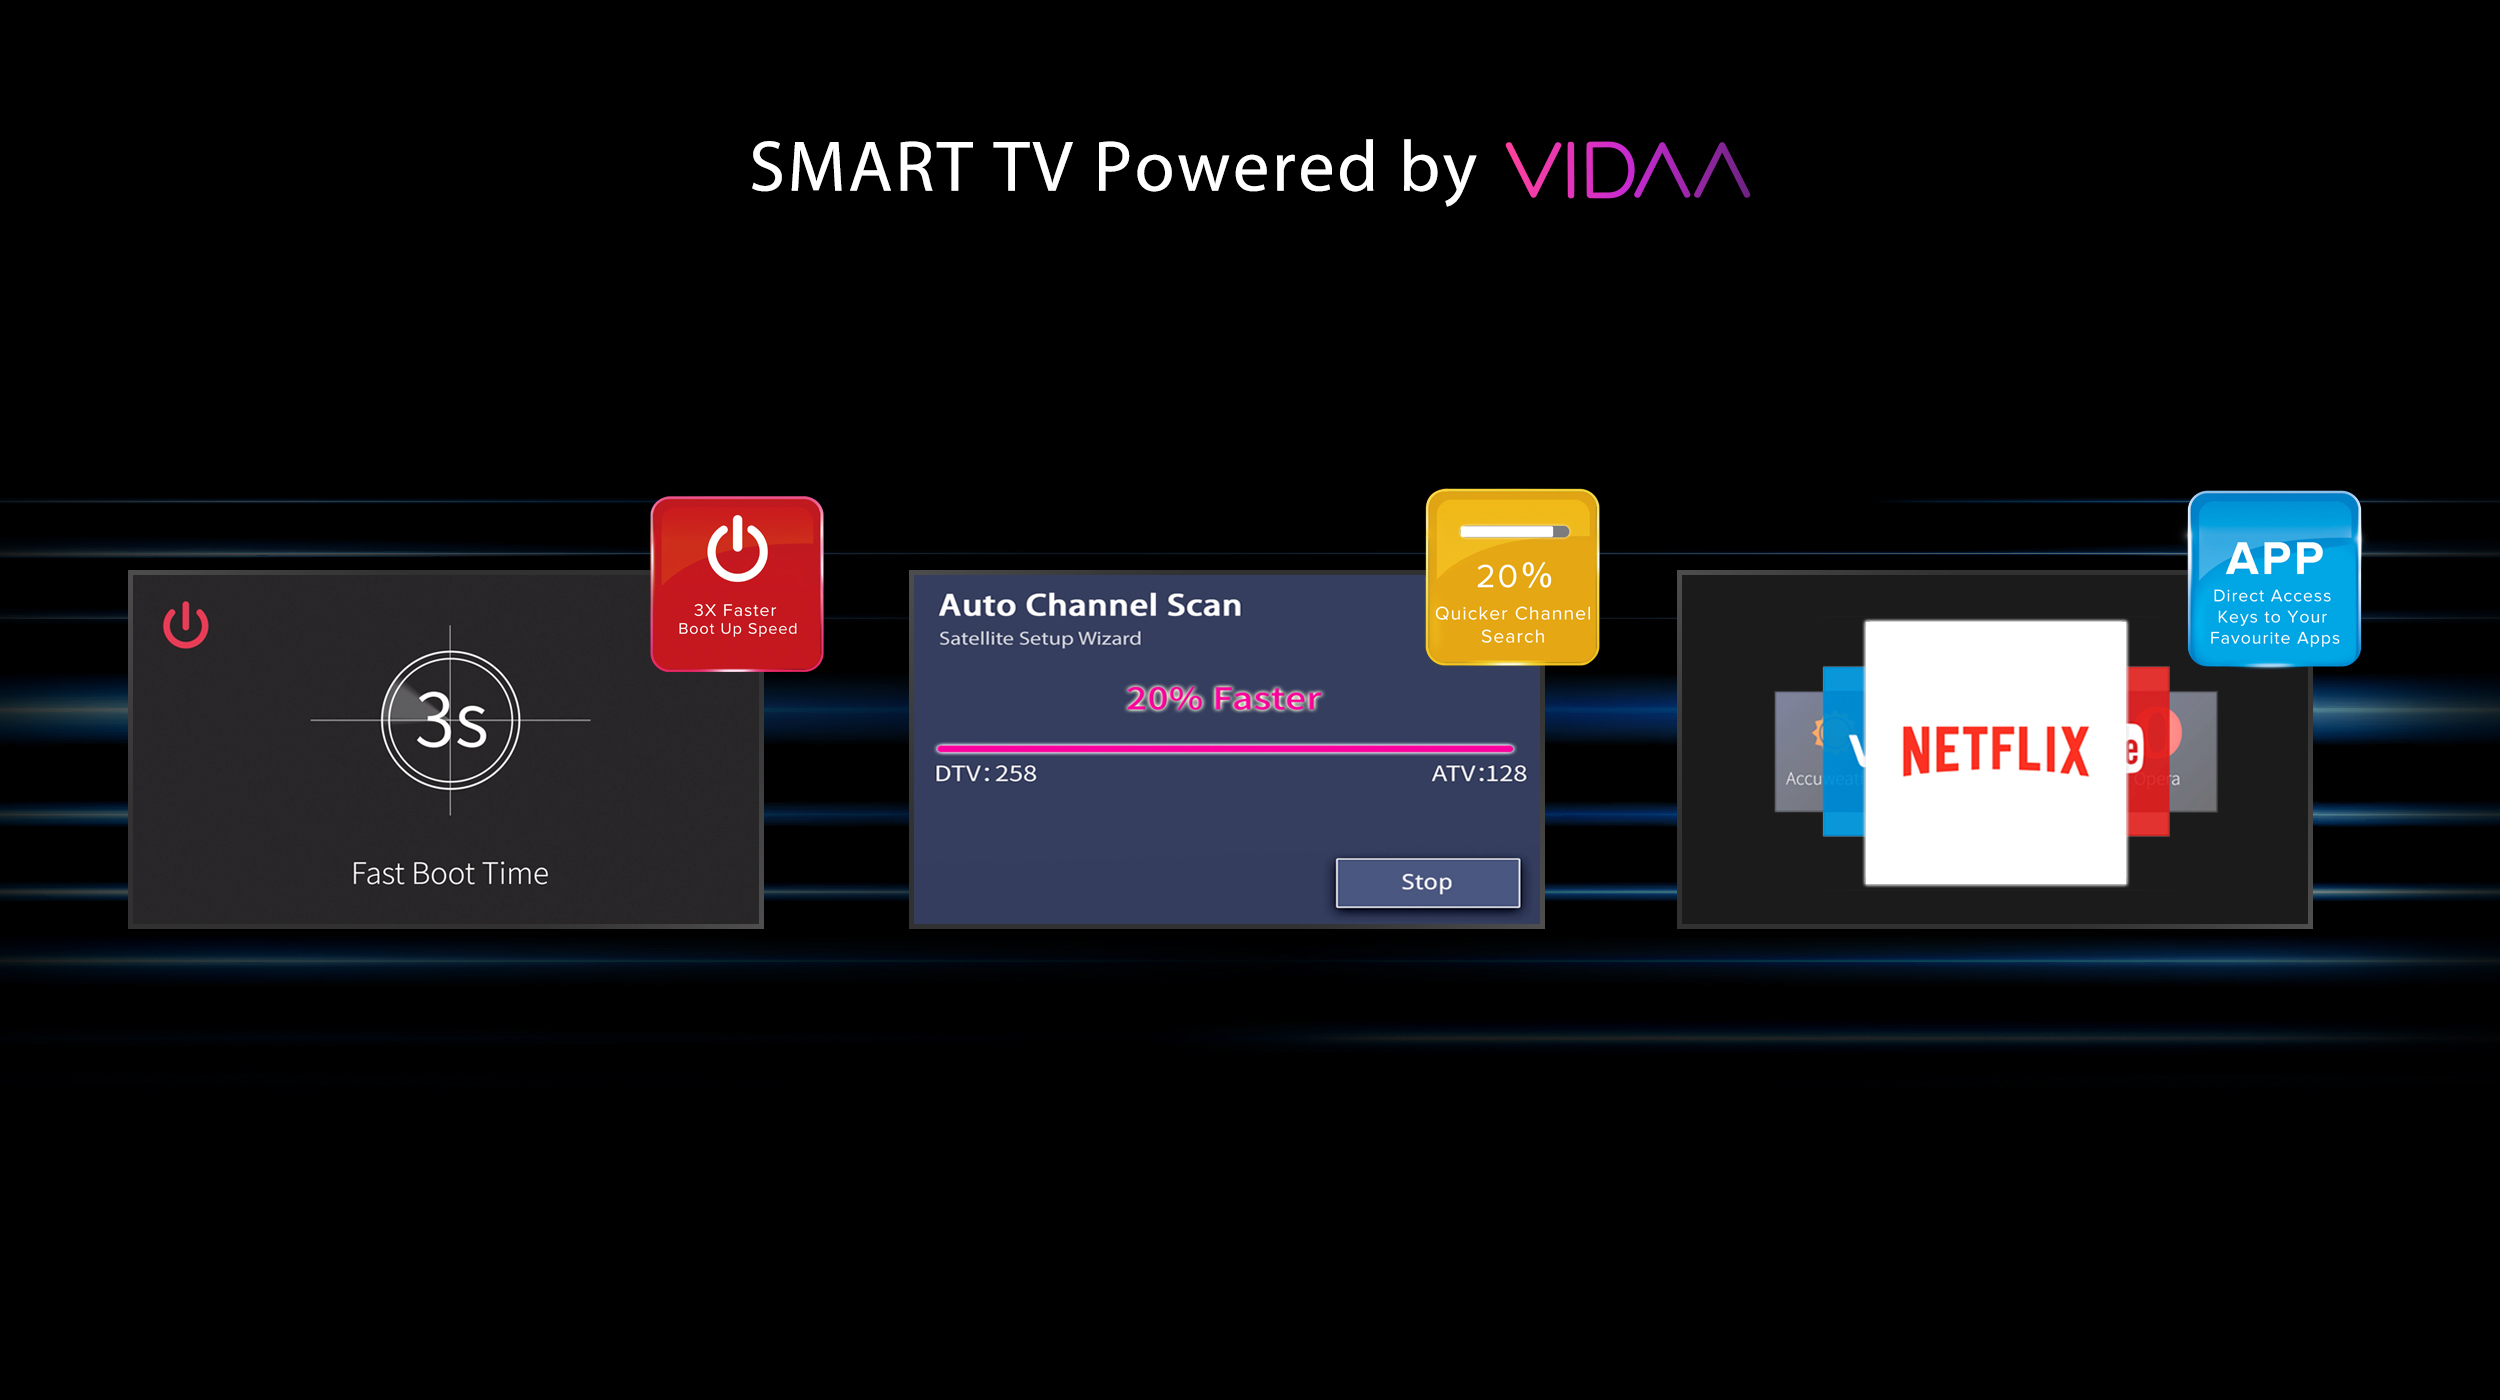 Toshiba Smart HD TV Powered by VIDAA